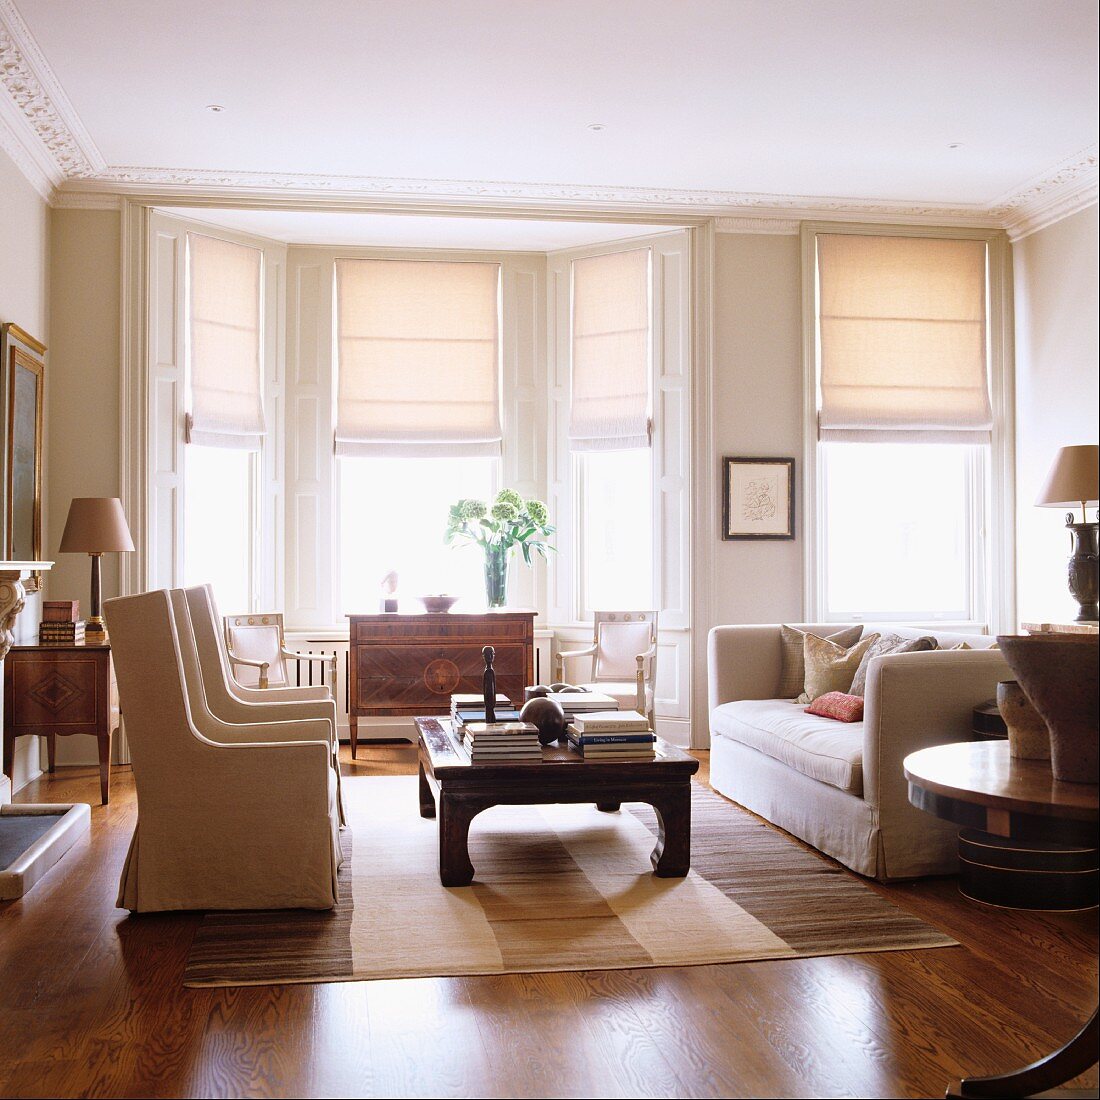 Elegante, helle Sofagarnitur im Wohnraum mit Erker und halbgeschlossene Raffrollos an den Fenstern